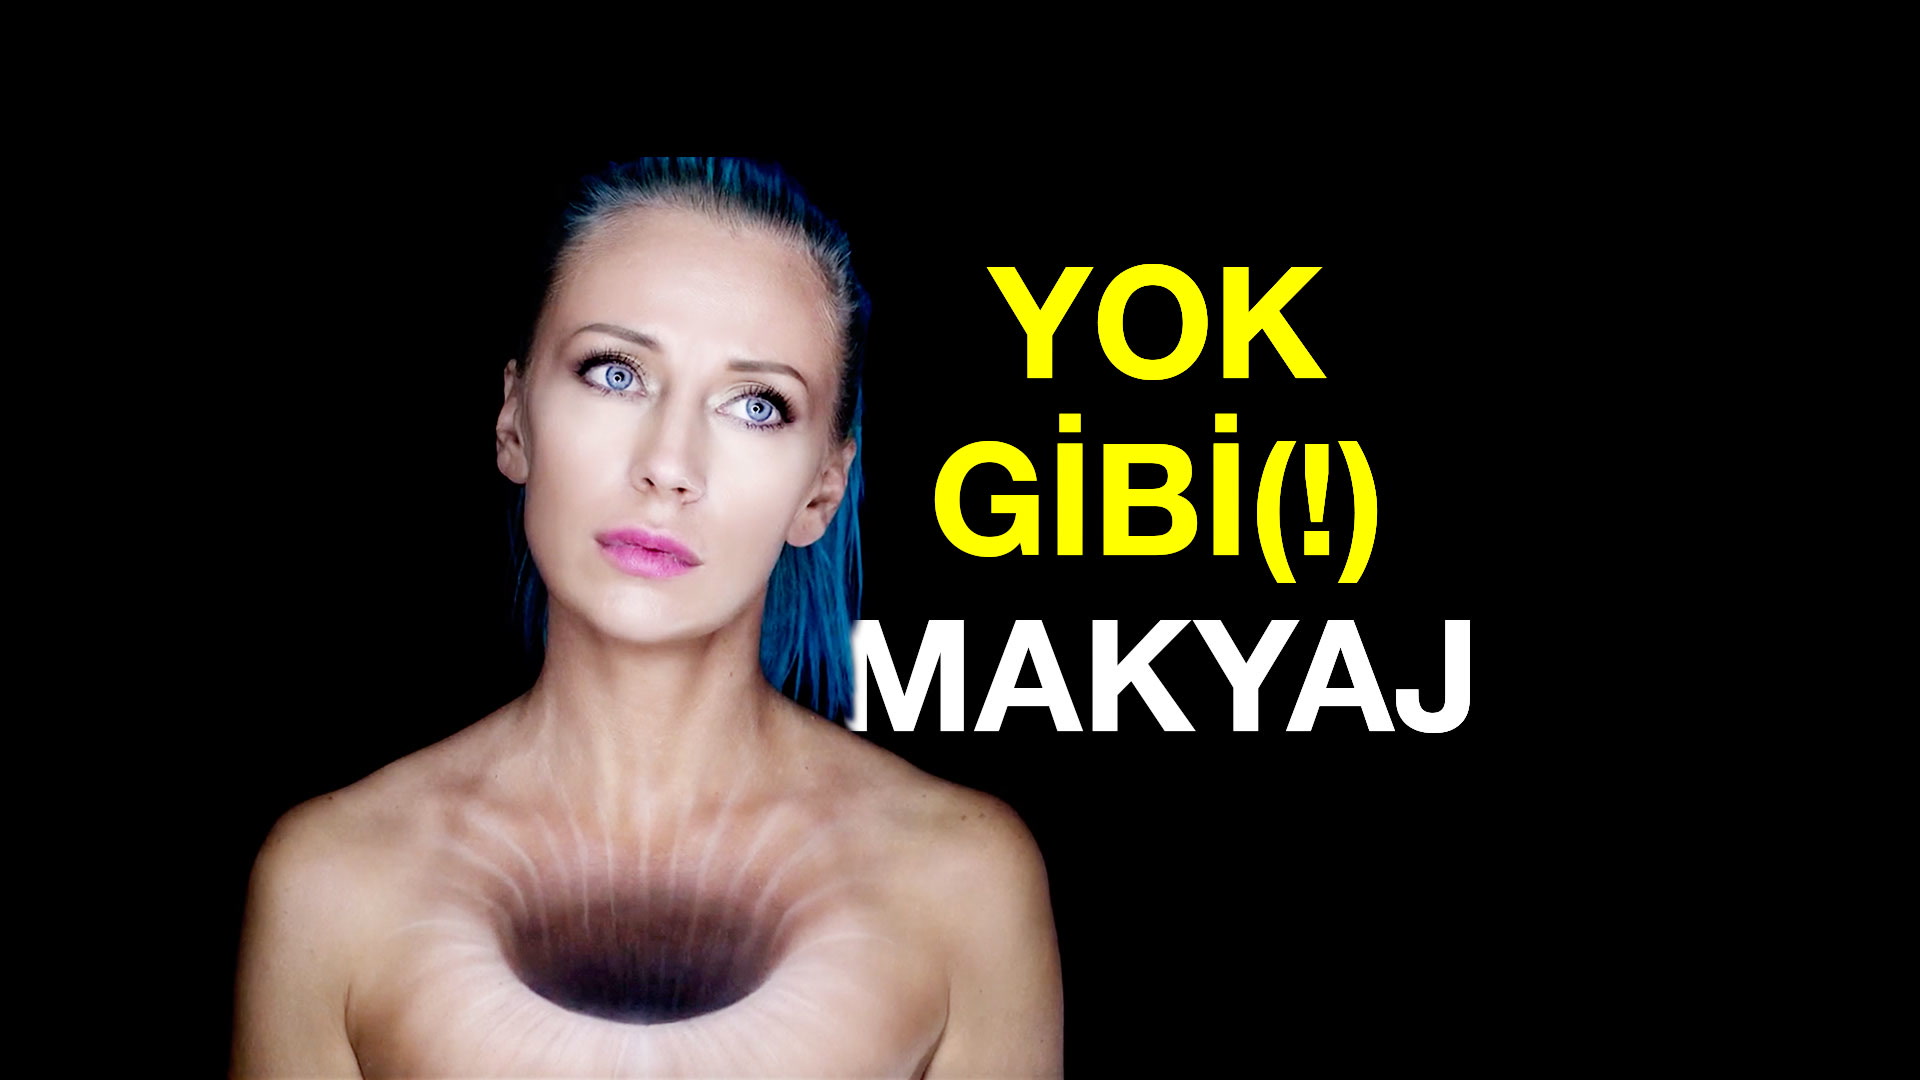 Yok Gibi (!) Makyaj